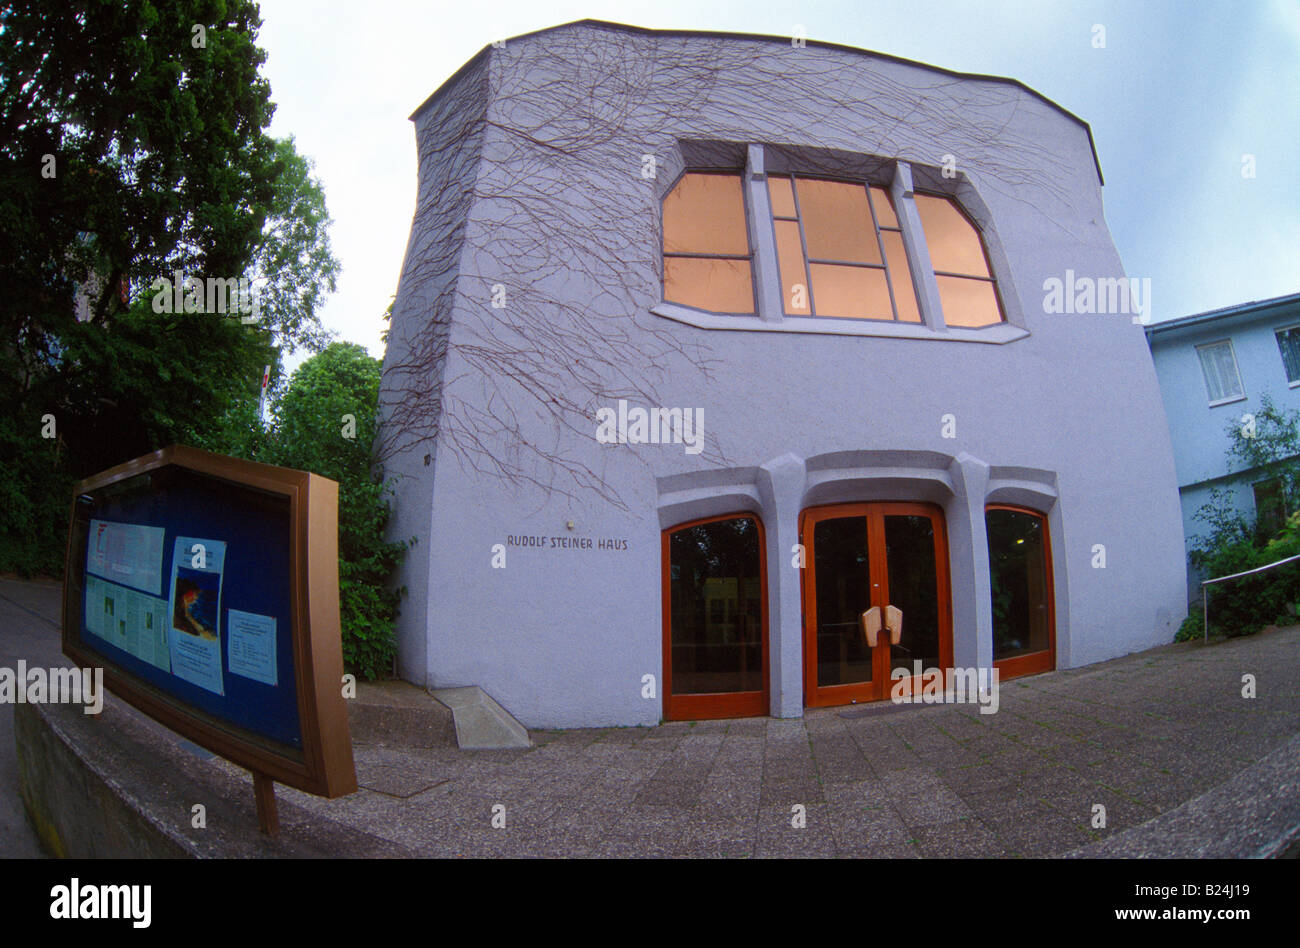 The Rudolf Steiner house in Stuttgart Germany Stock Photo